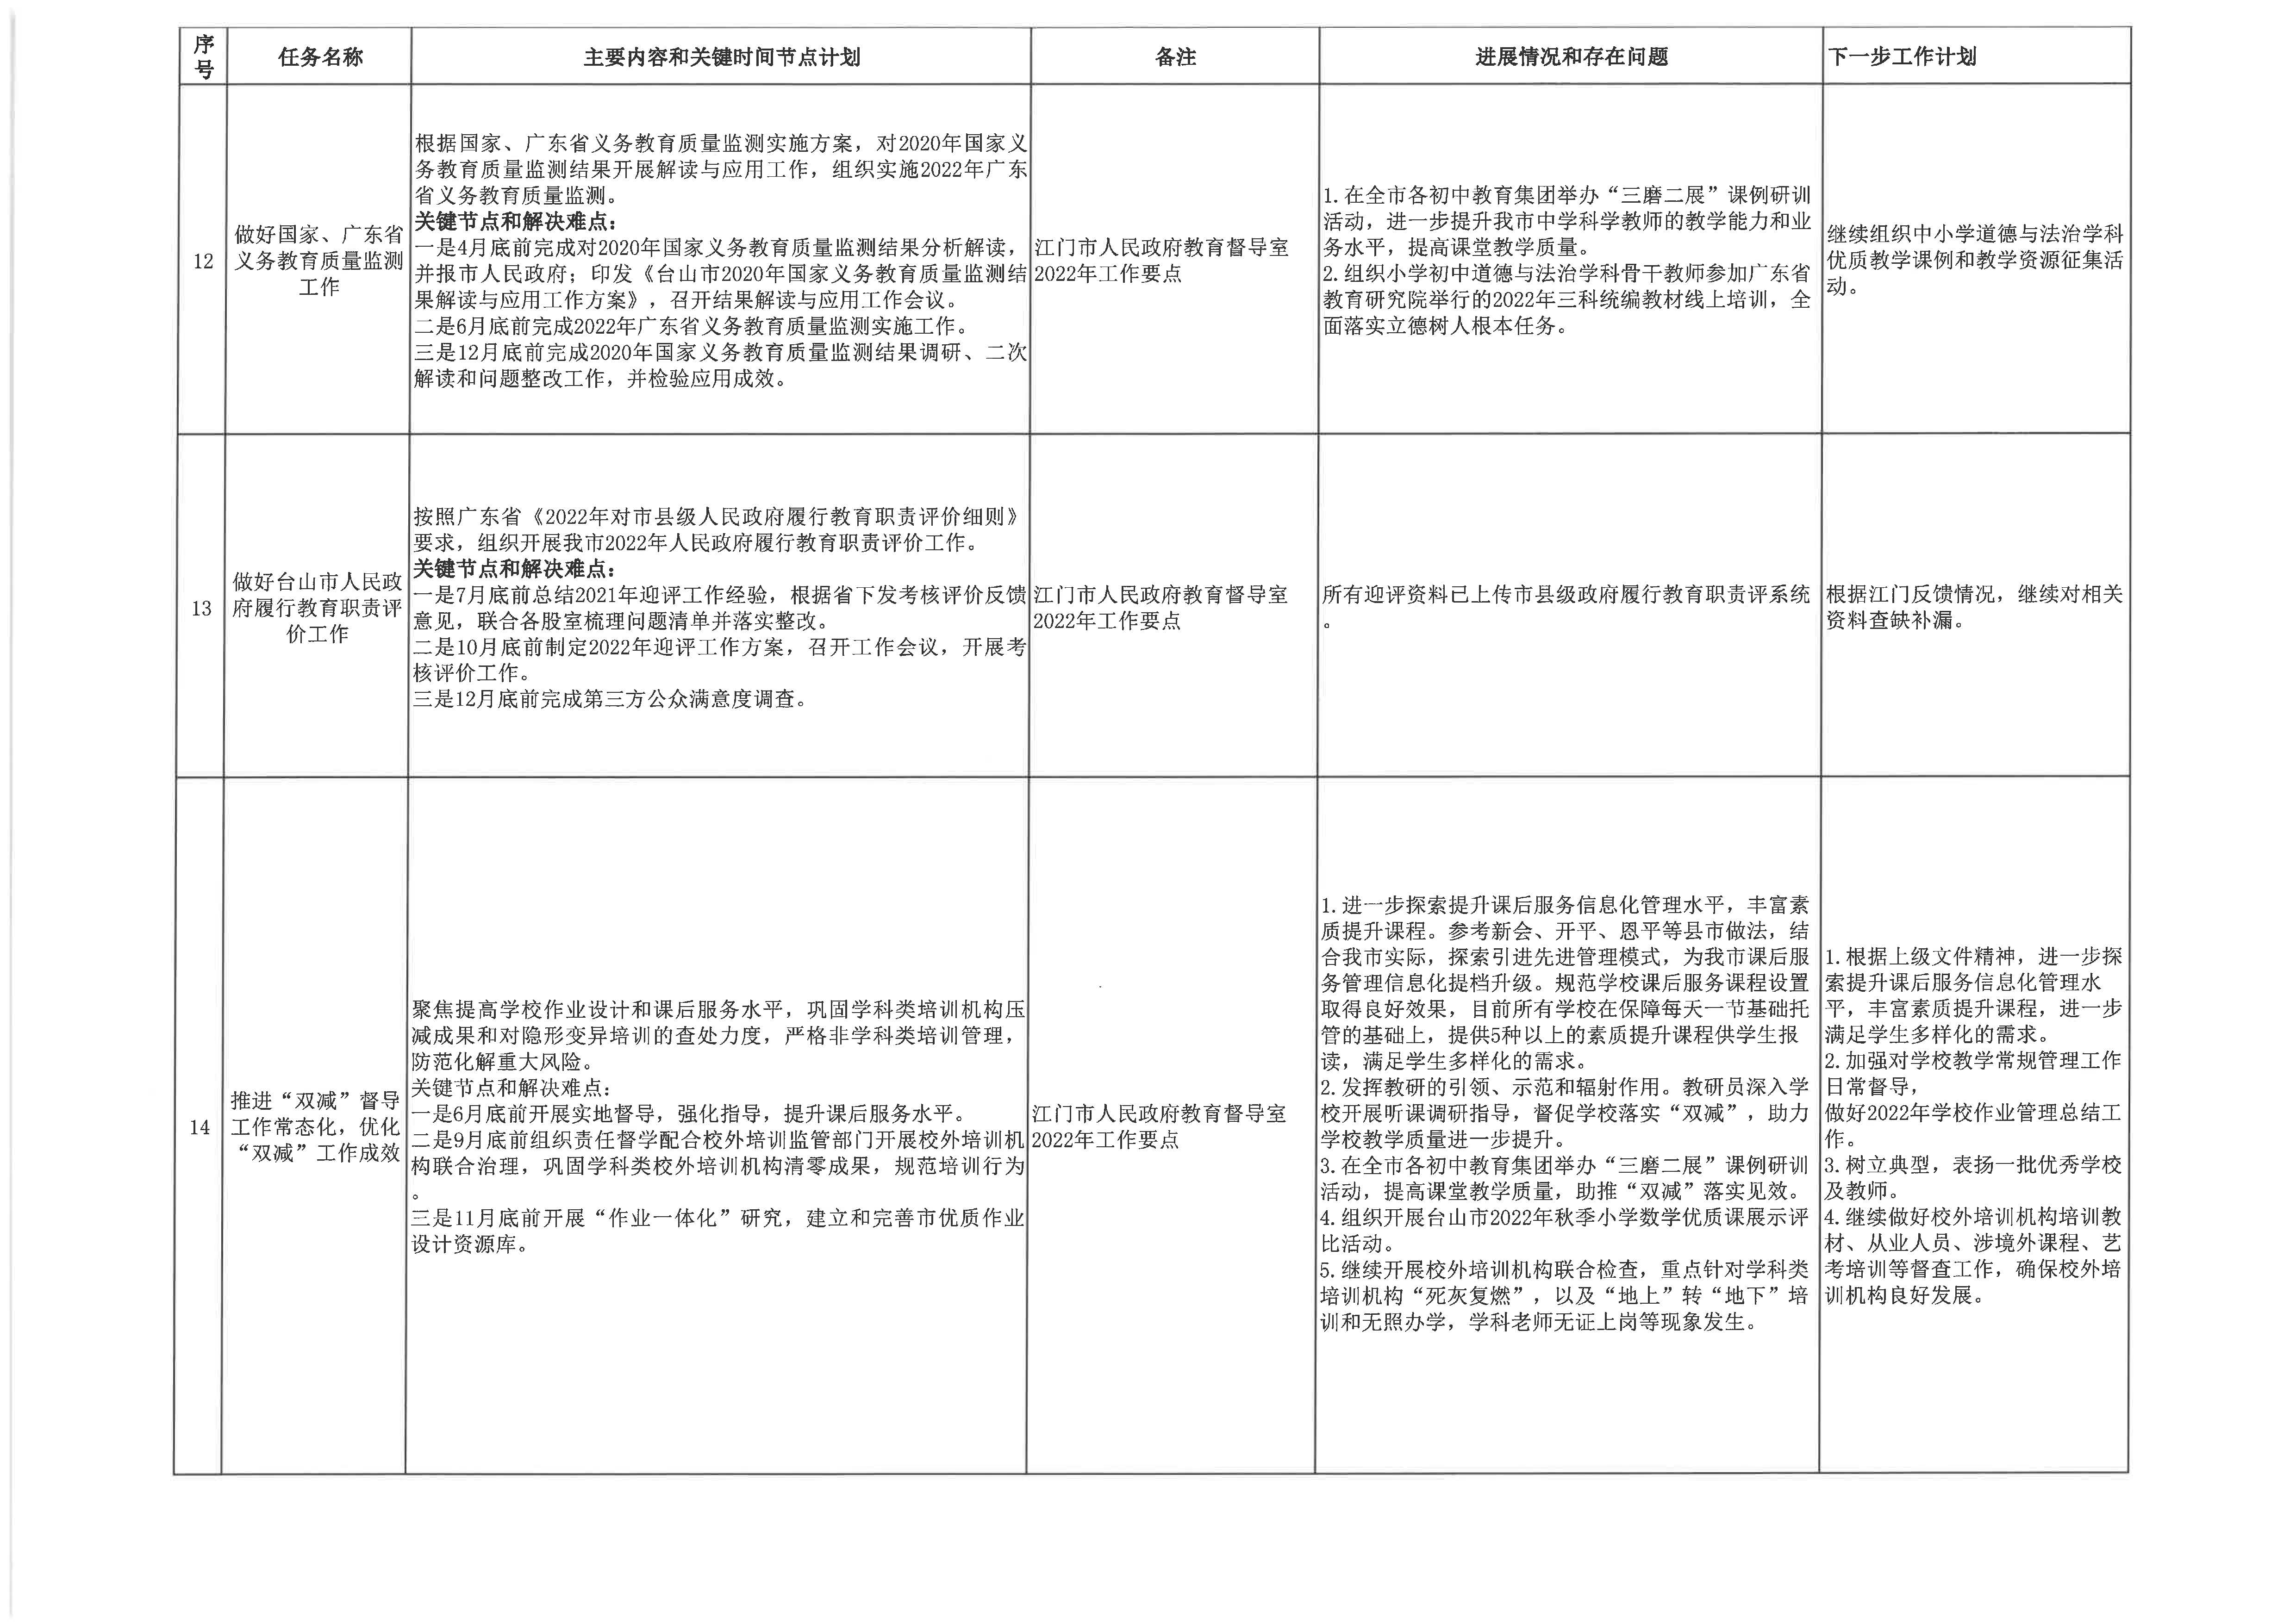 20230113台山市教育系统2022年重点工作任务进展情况表（1-12月）4.jpg